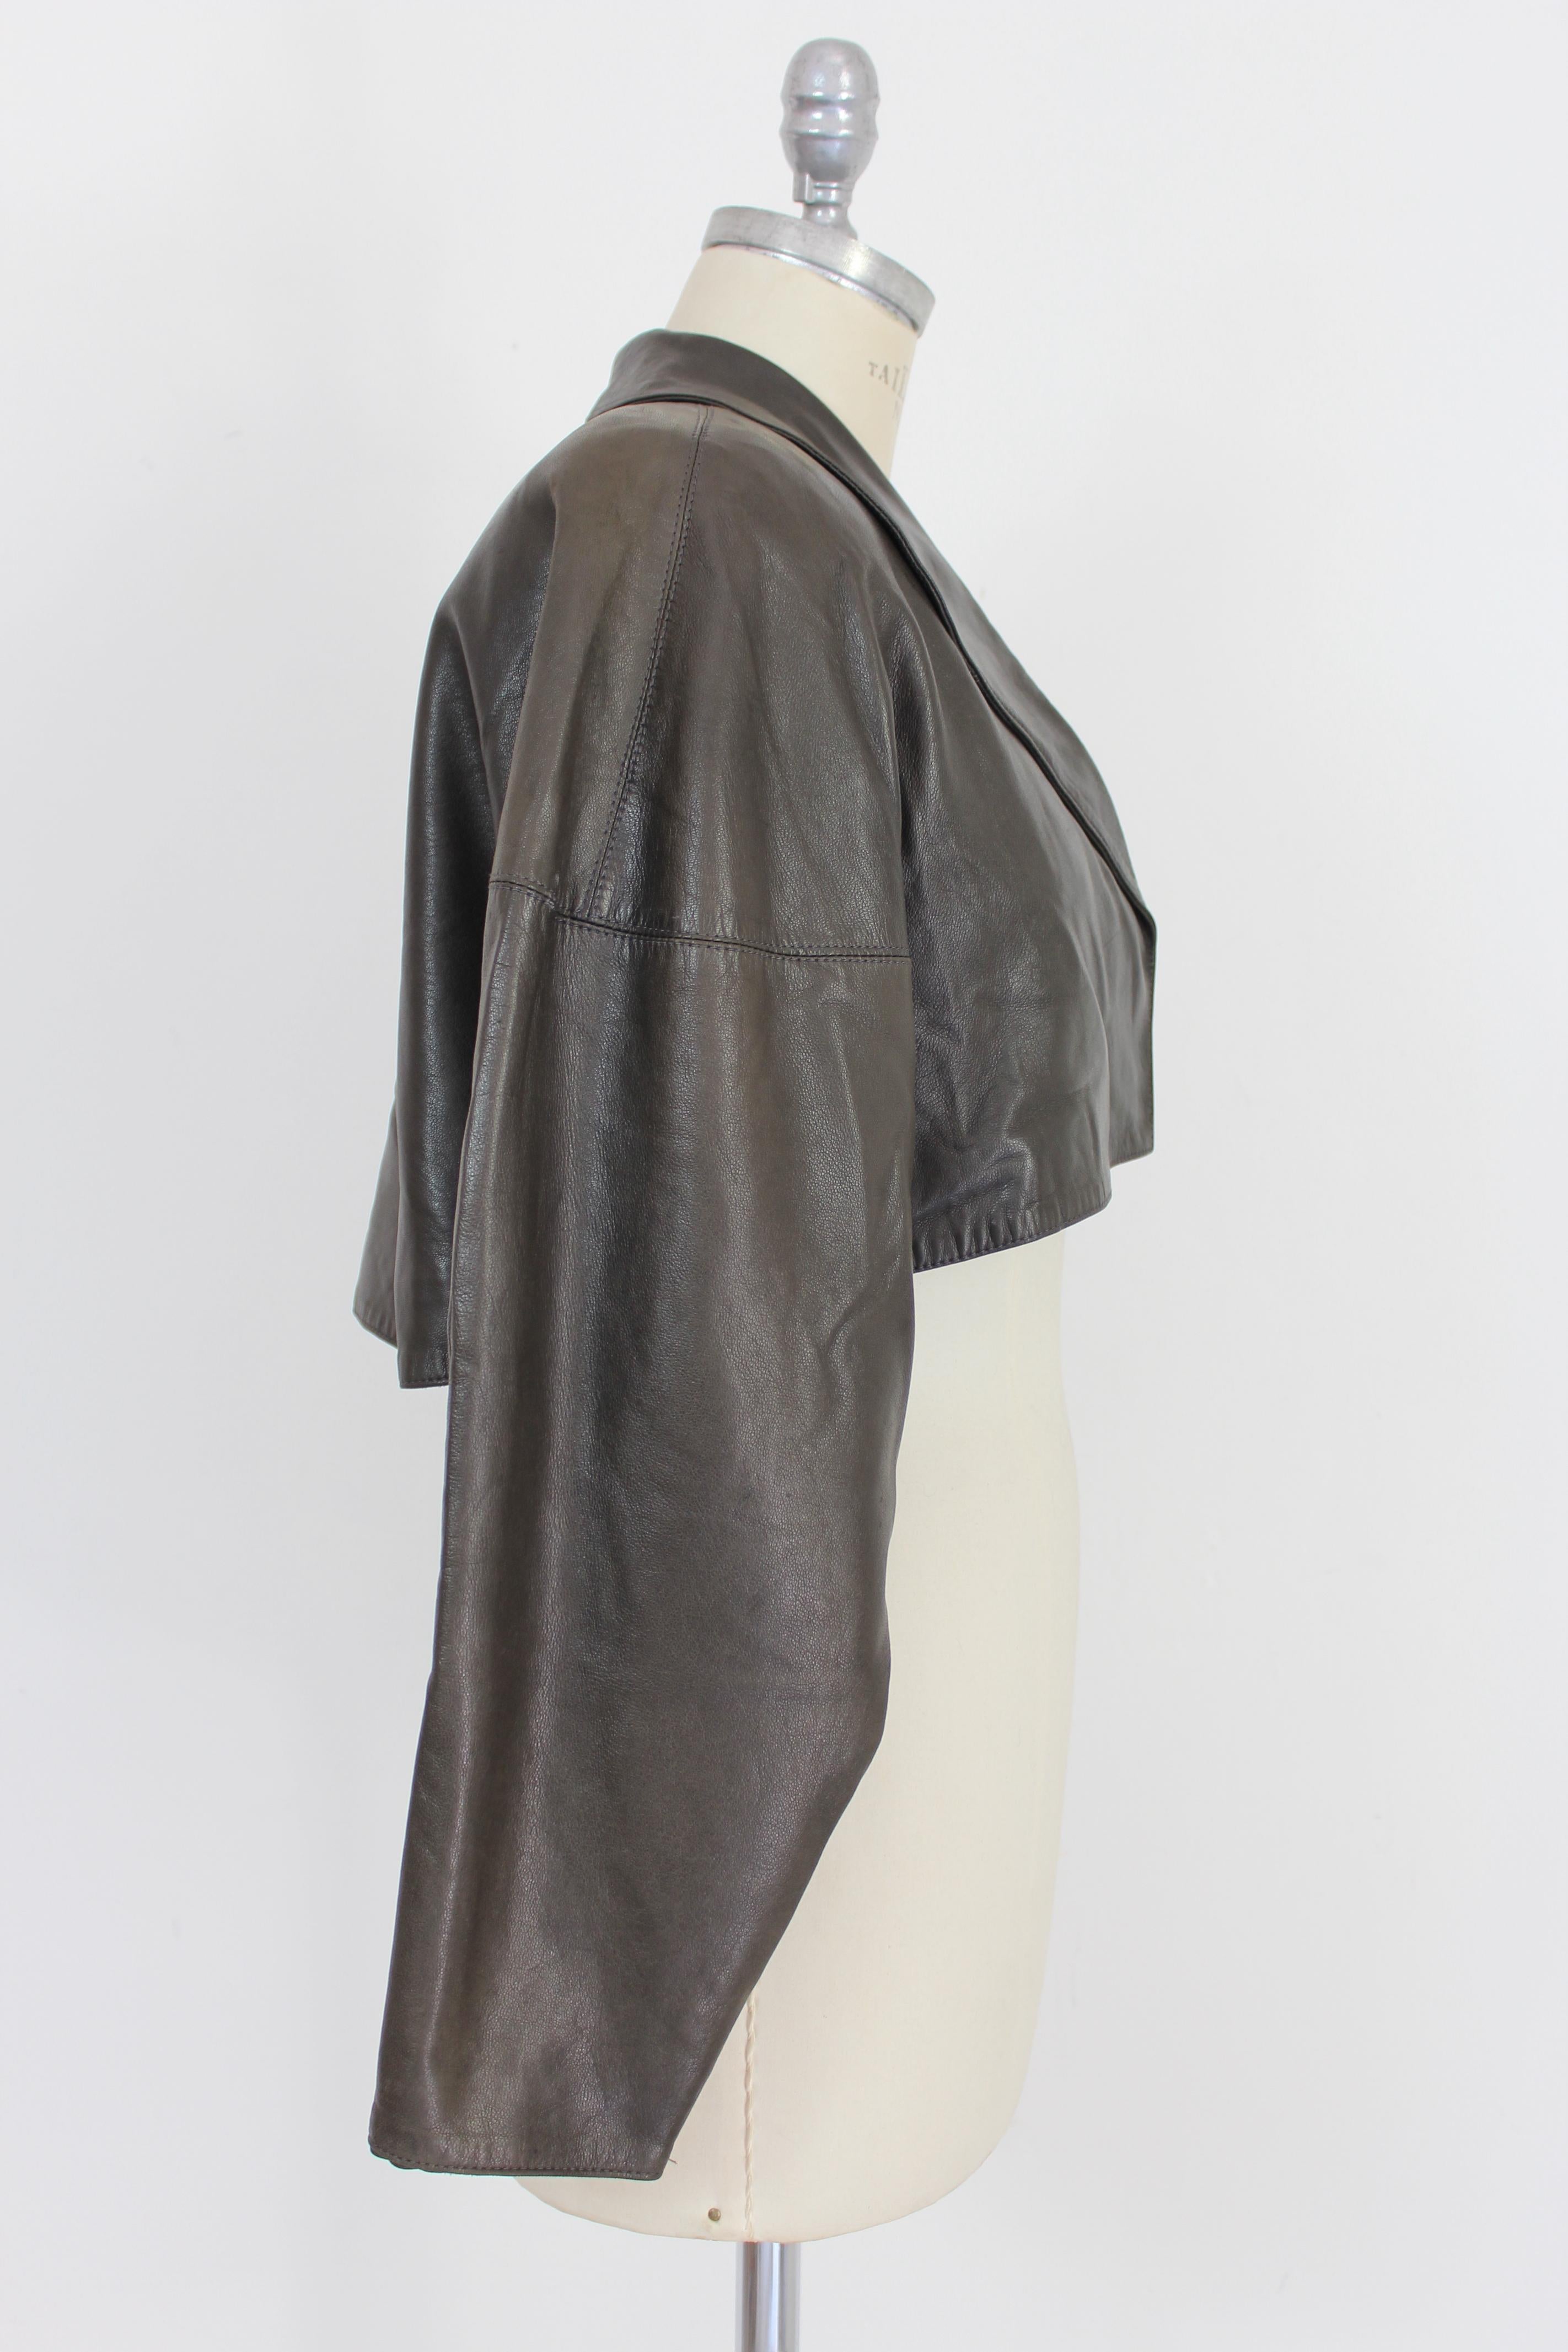 Noir Azzedine Alaia Leather Black Iconic Bolero Jacket 1980